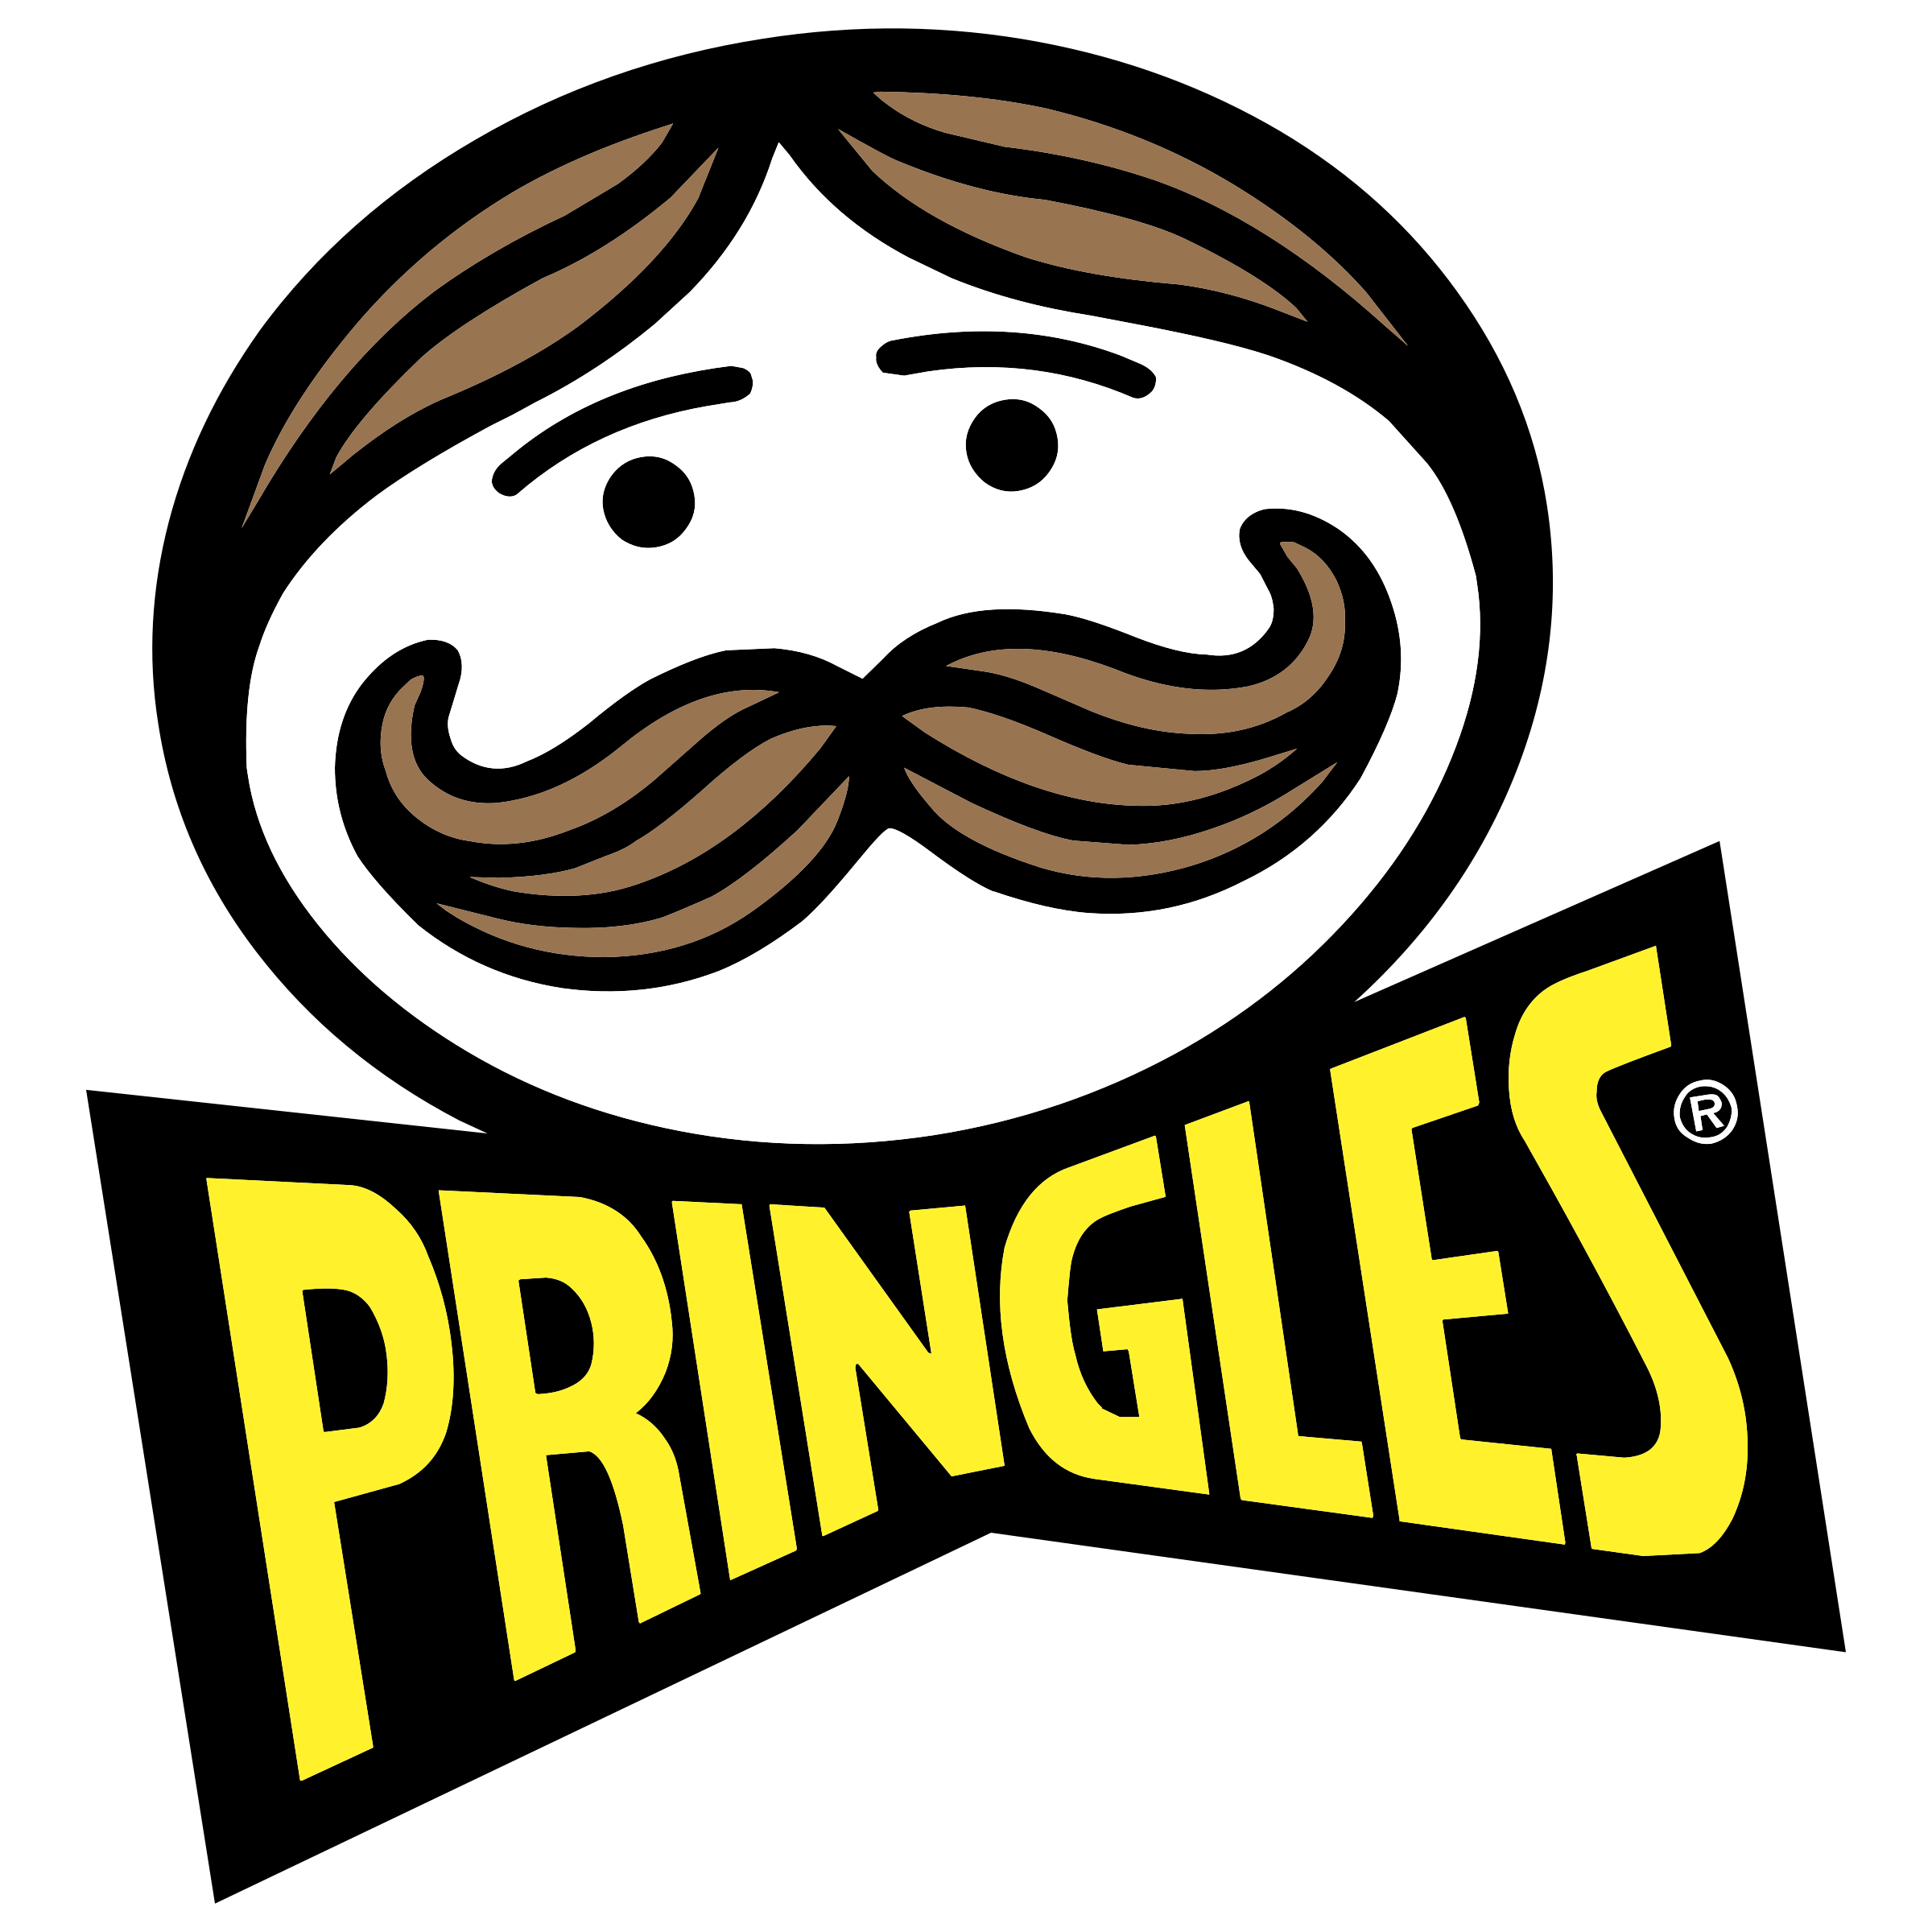 Pringles Logo Potato Chip Gra